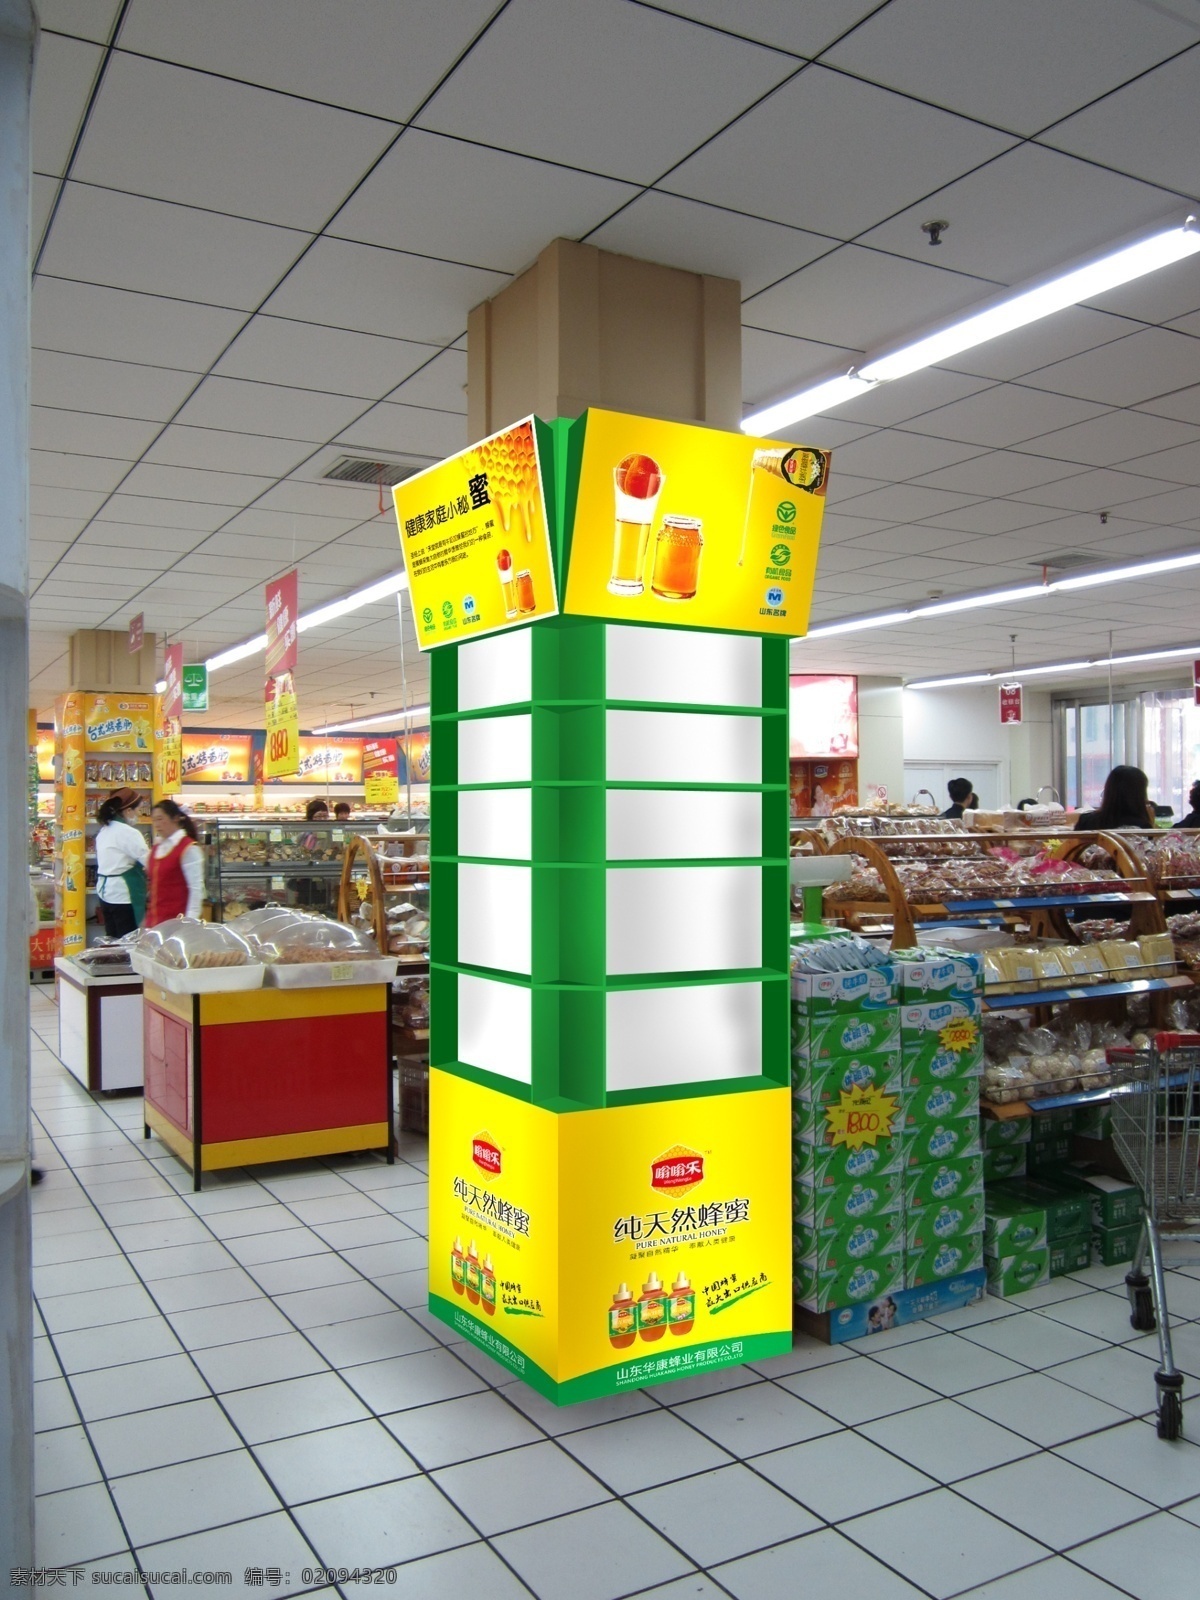 超市 包 柱 效果图 超市包柱 嗡嗡乐 广告展板 柱子宣传